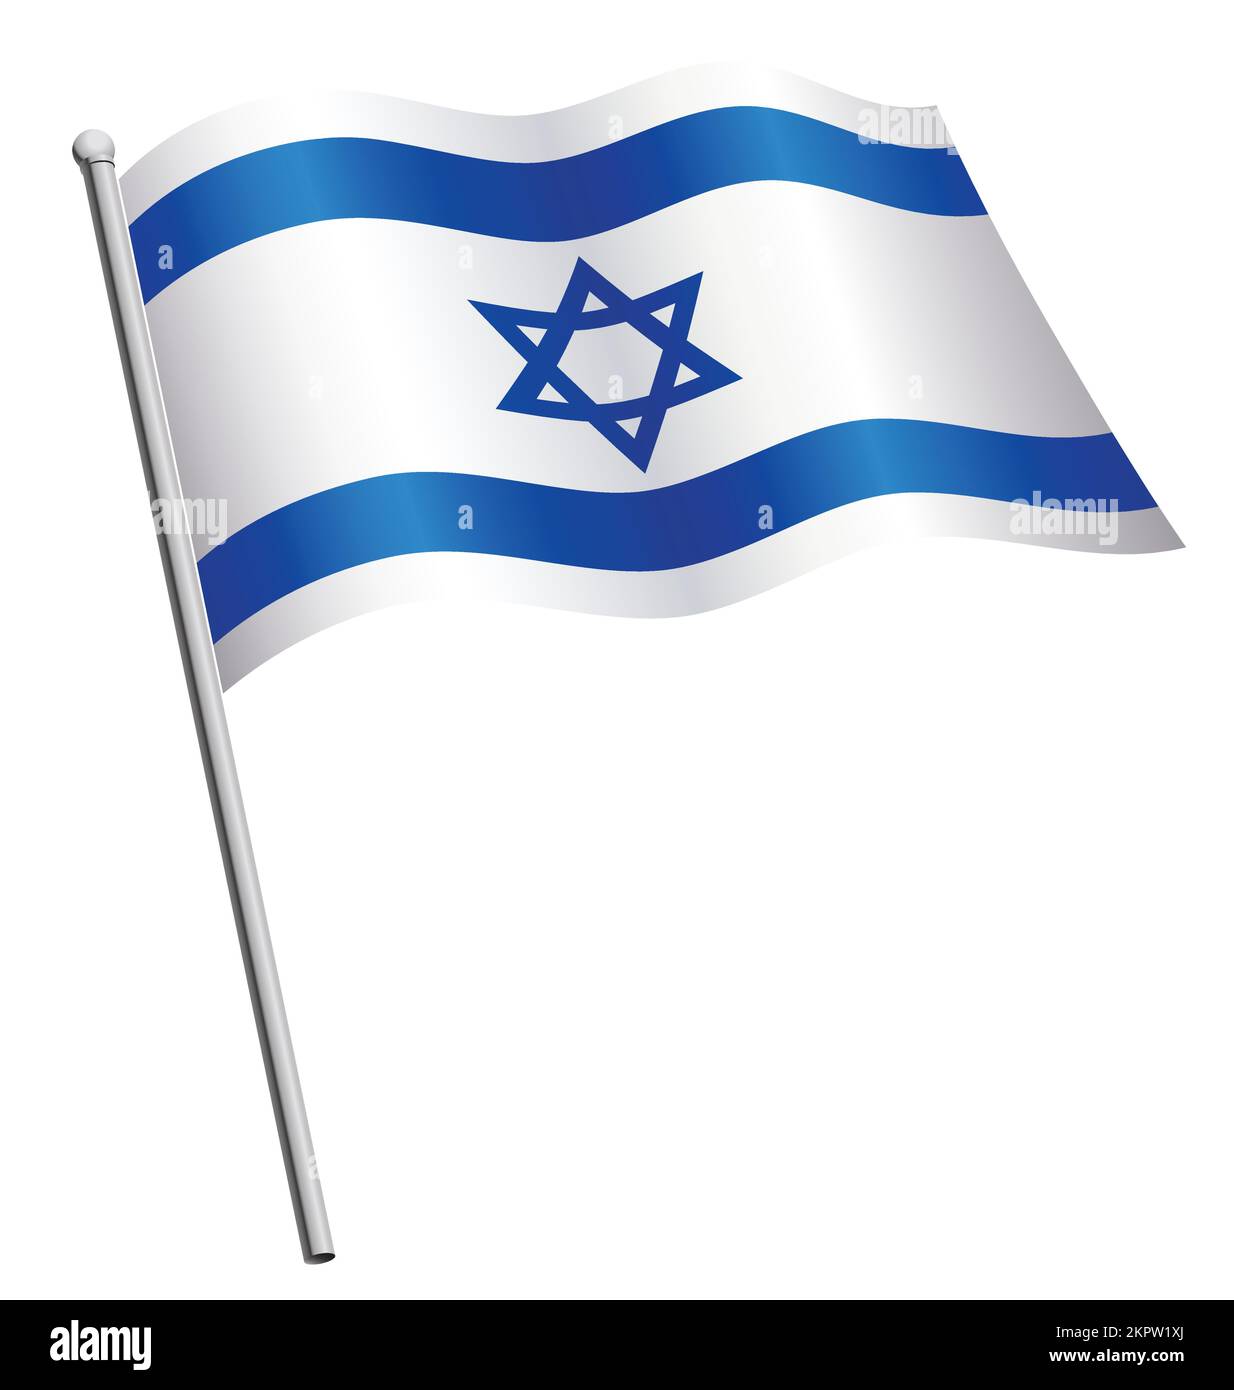 Israelische Flagge Israels, die auf einem seidenförmigen Überträger auf weißem Hintergrund winkt Stock Vektor